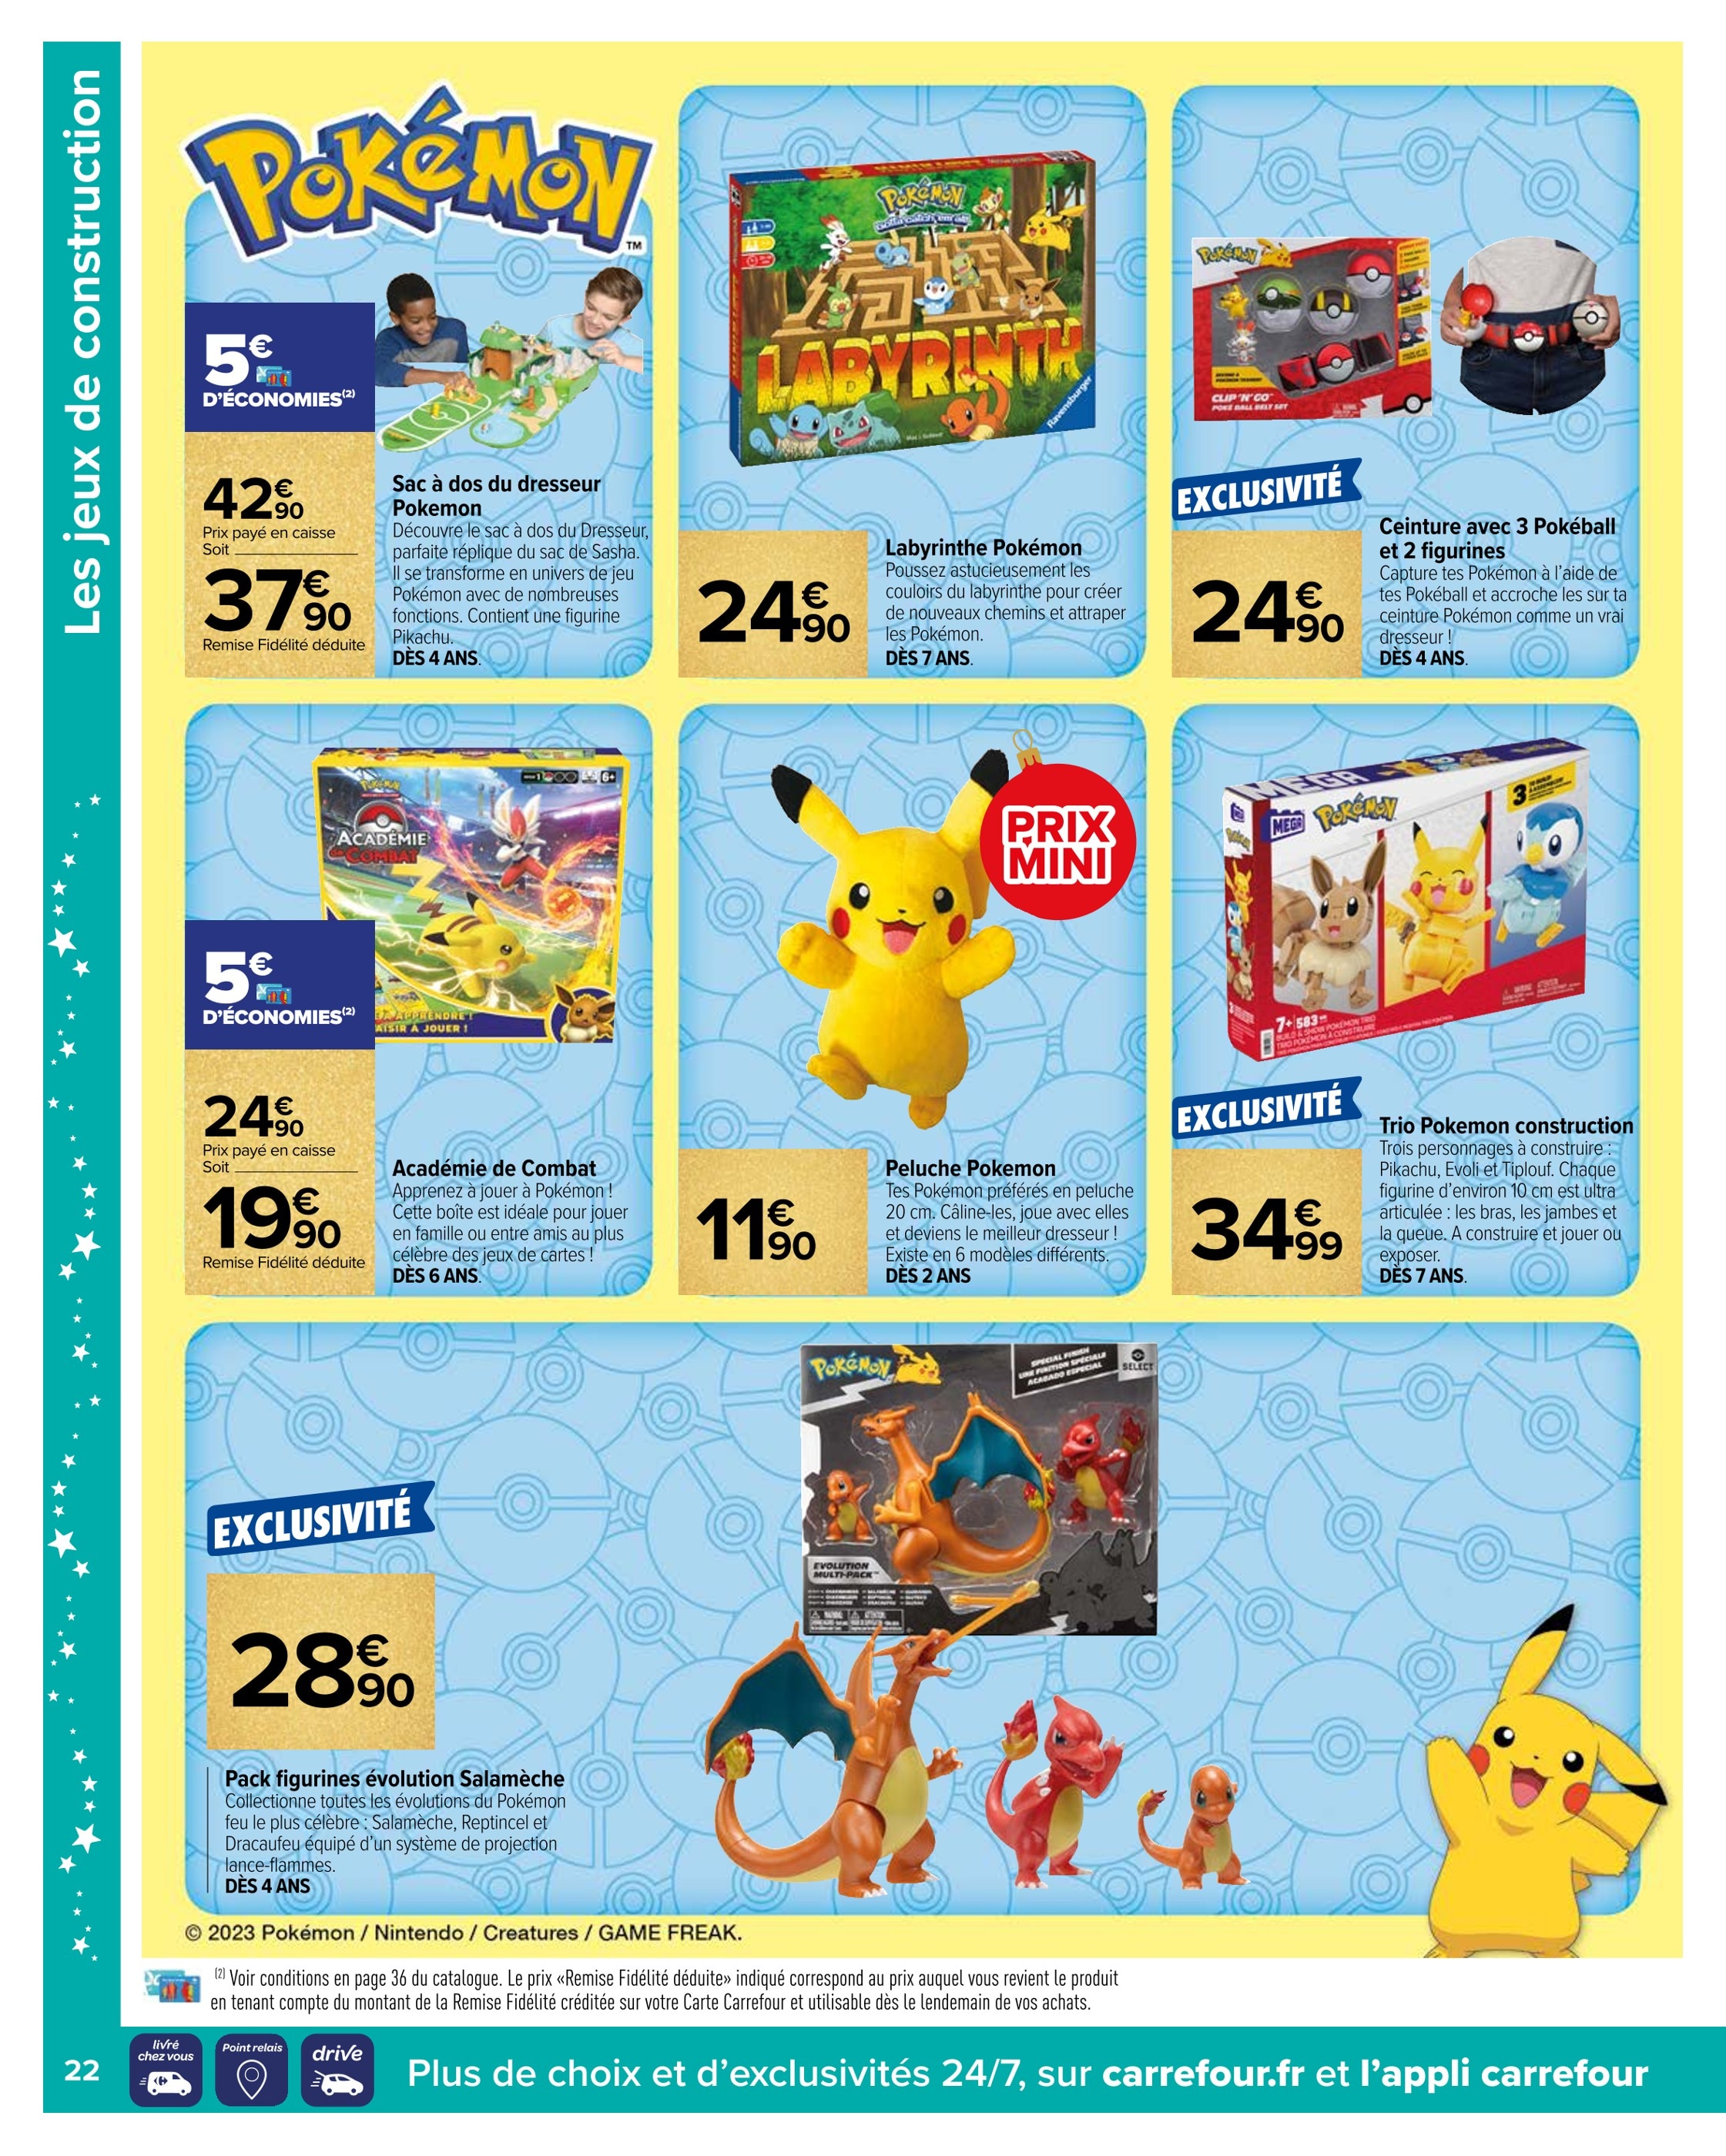 Promo Pikachu interactif et ses accessoires chez Intermarché